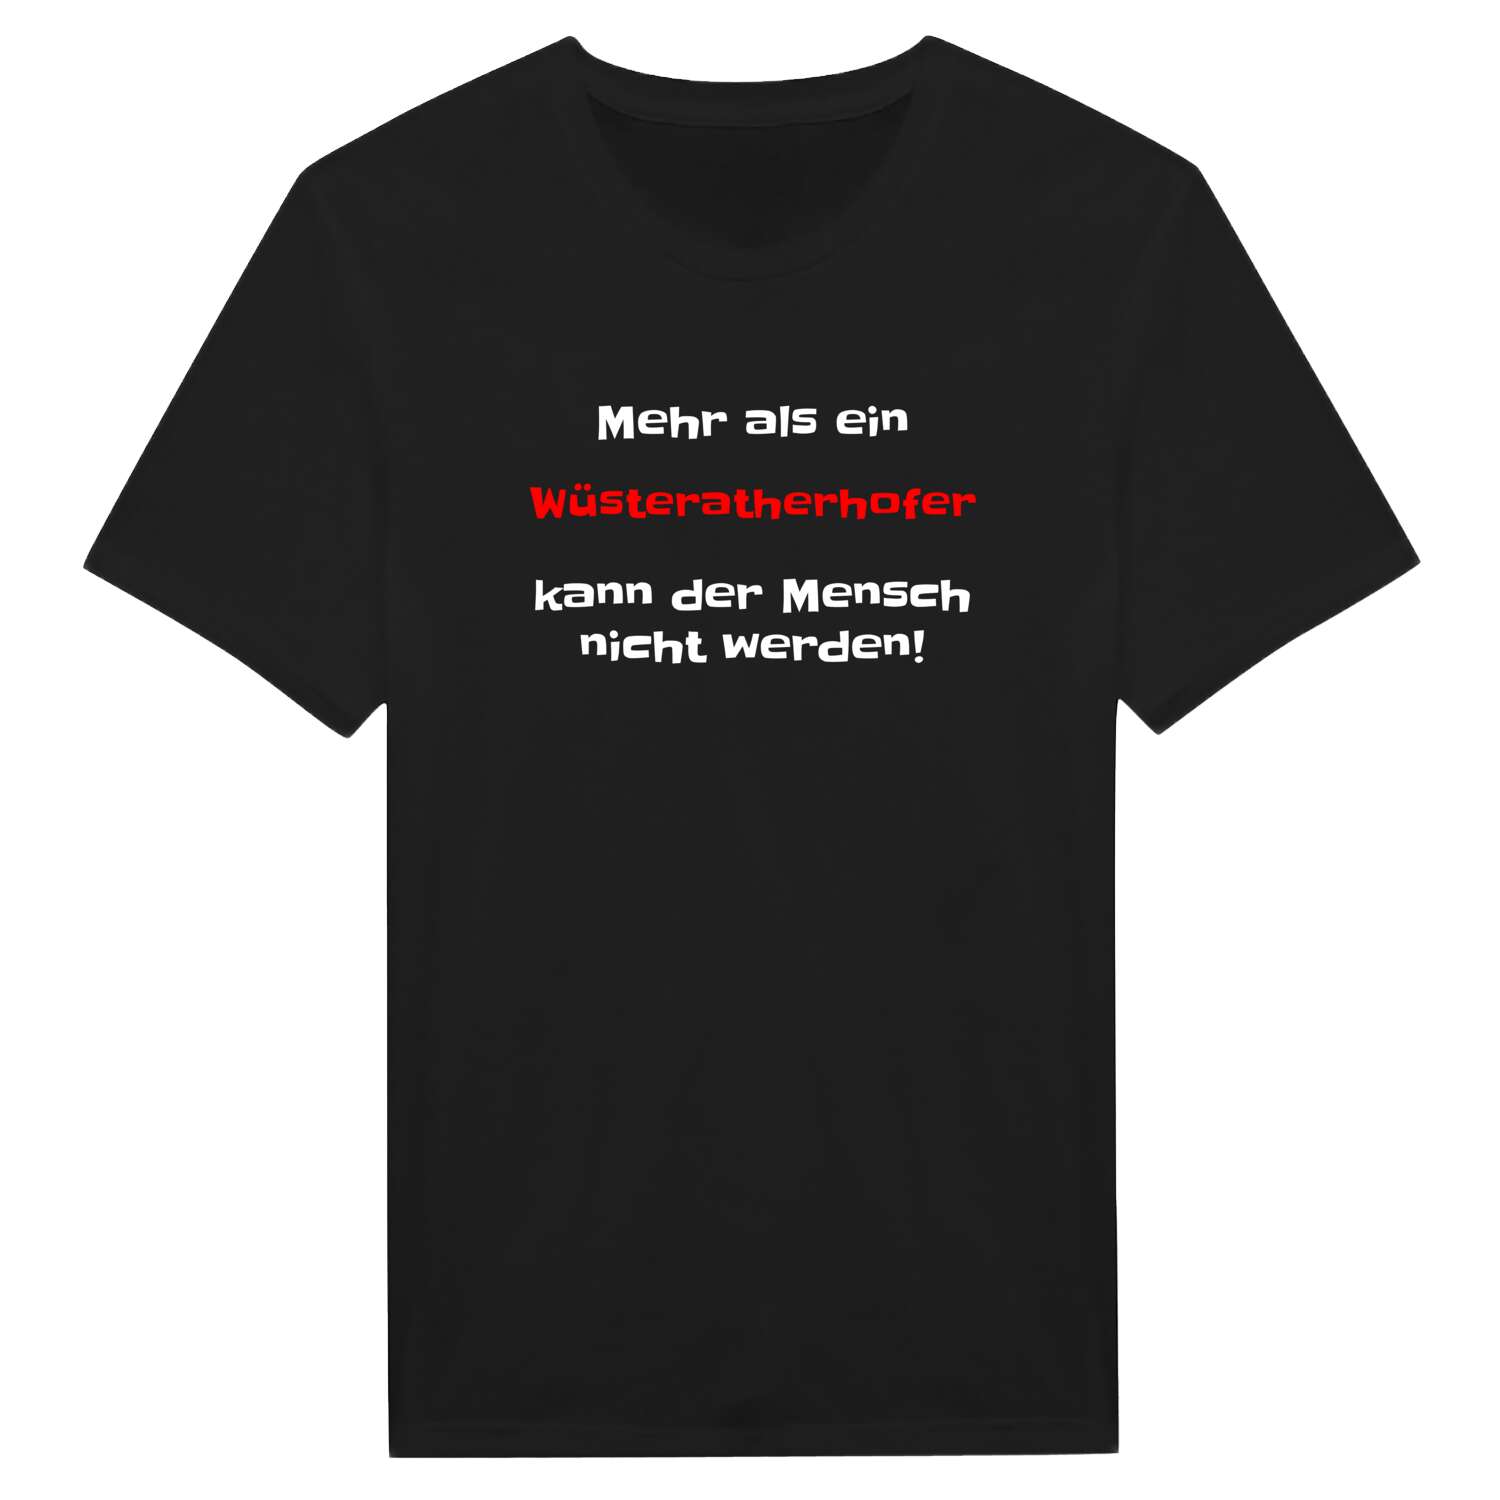 Wüsteratherhof T-Shirt »Mehr als ein«